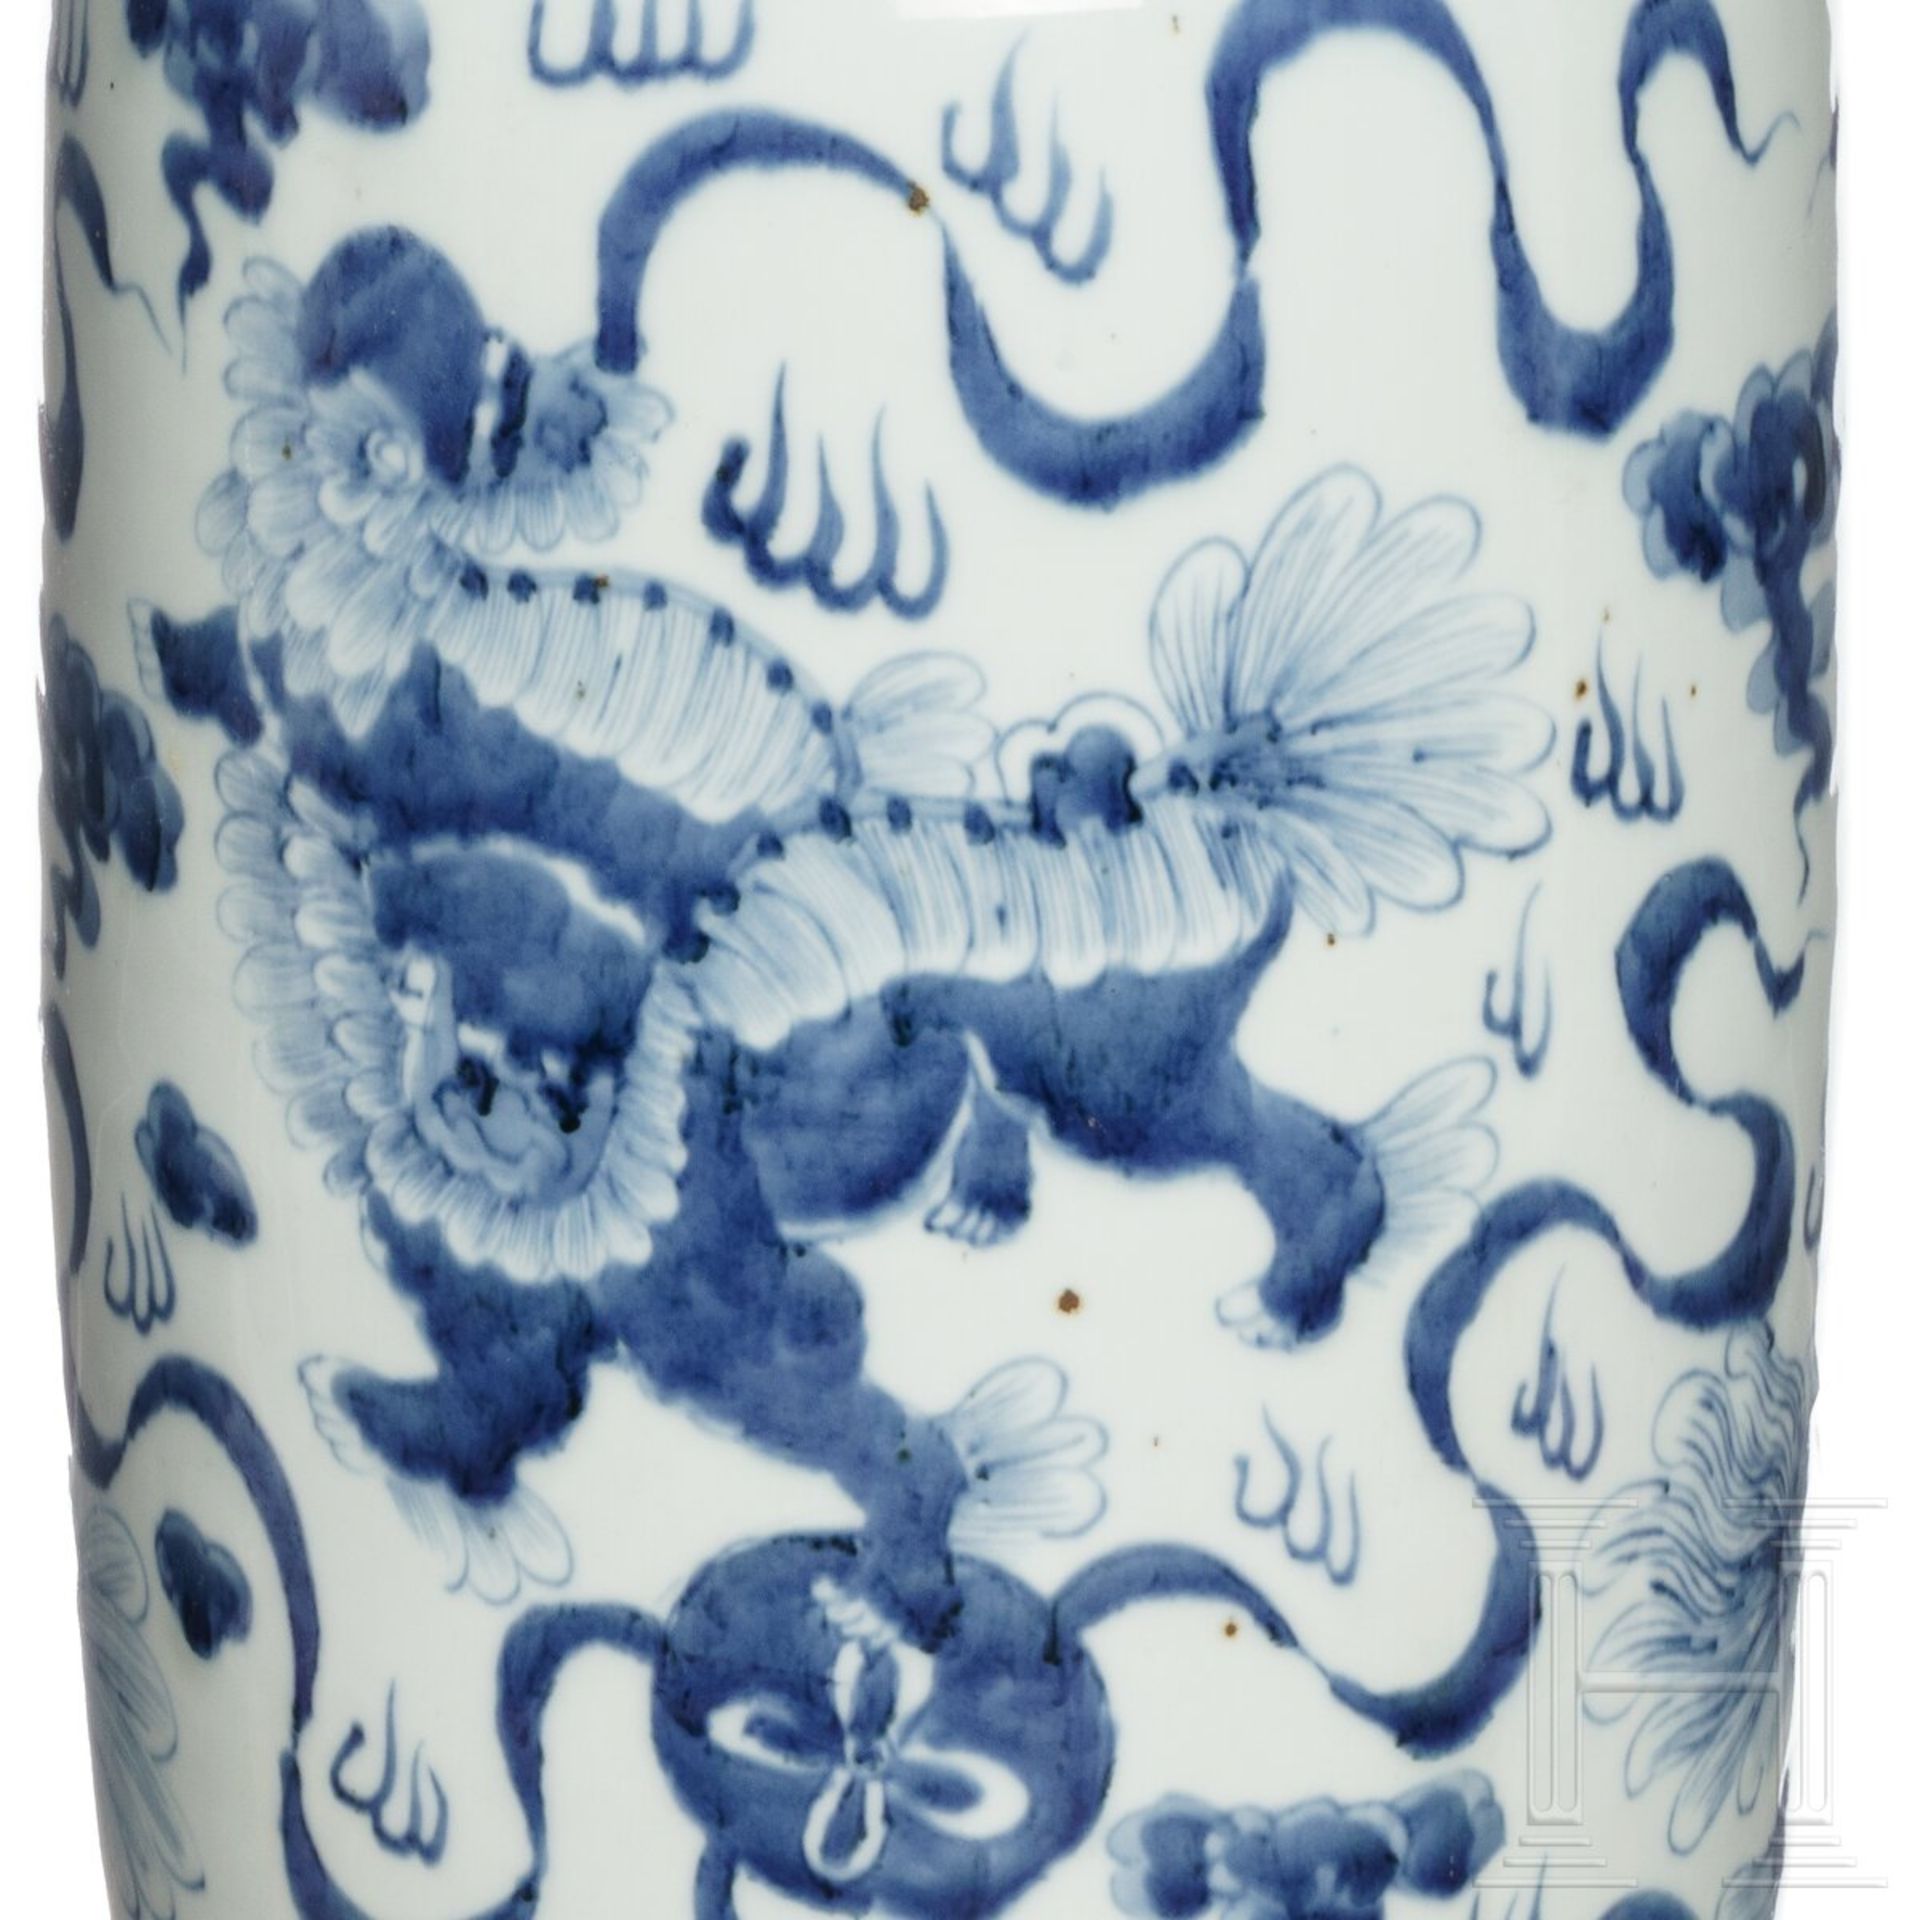 Große blau-weiß glasierte Vase, China, 20. Jdht.  - Bild 4 aus 4